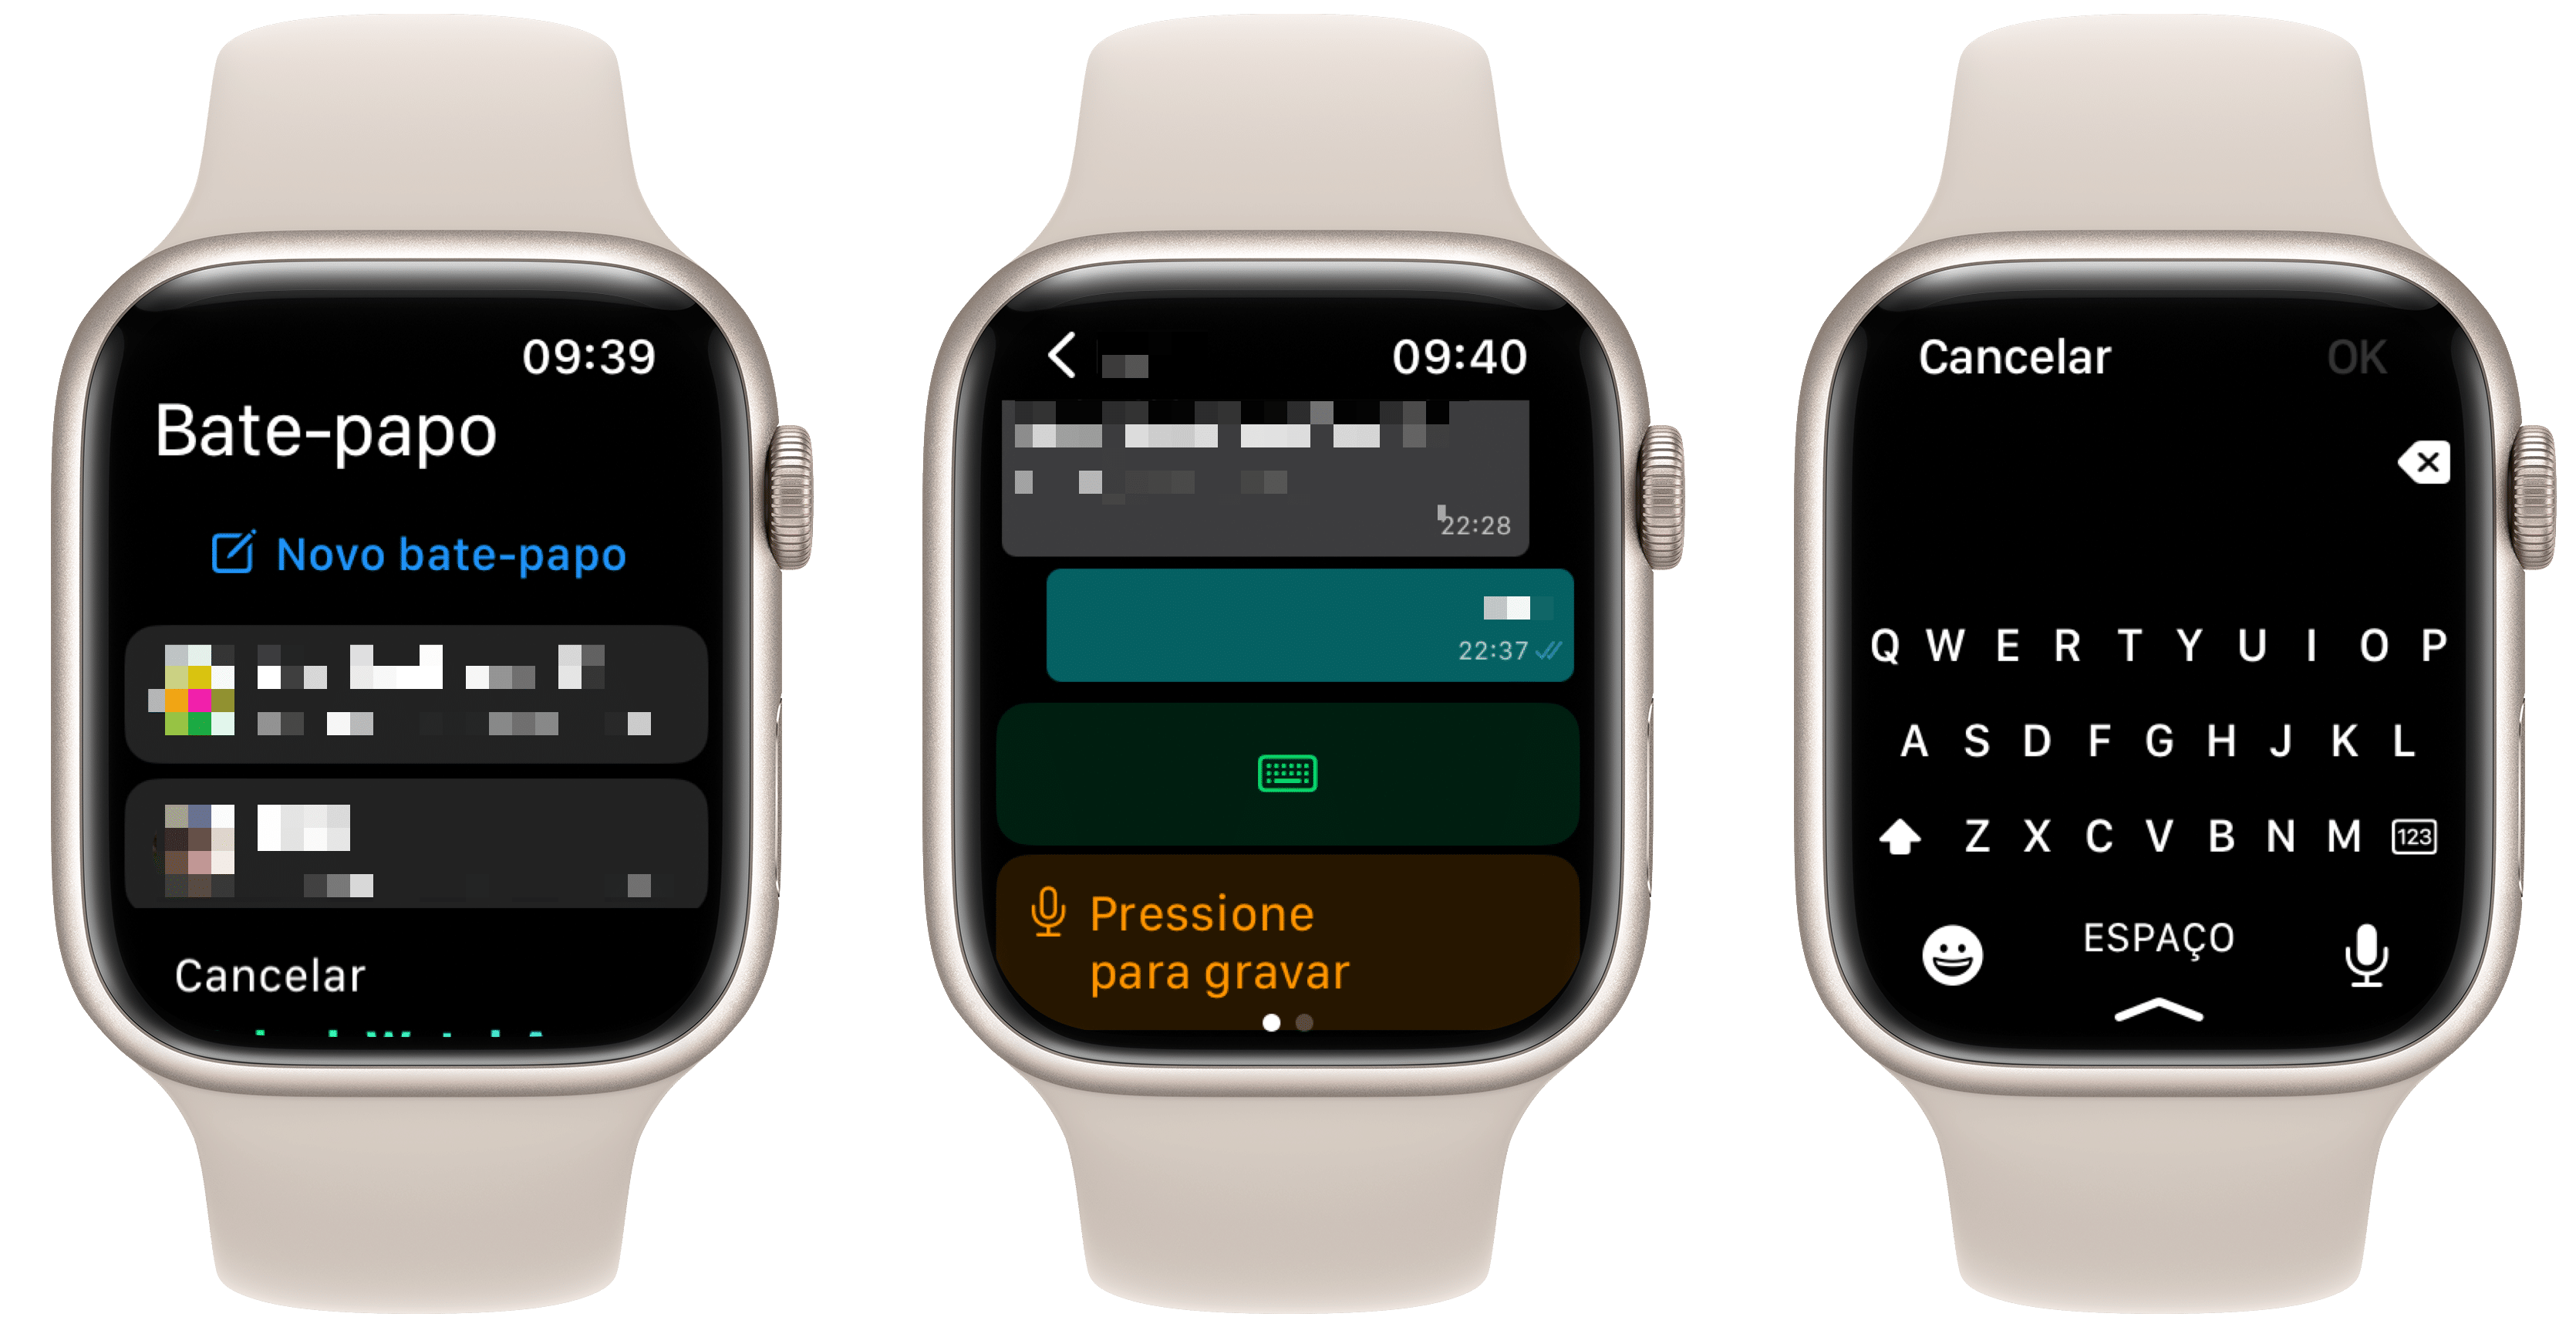 Conheça 3 apps para usar o WhatsApp no Apple Watch - MacMagazine